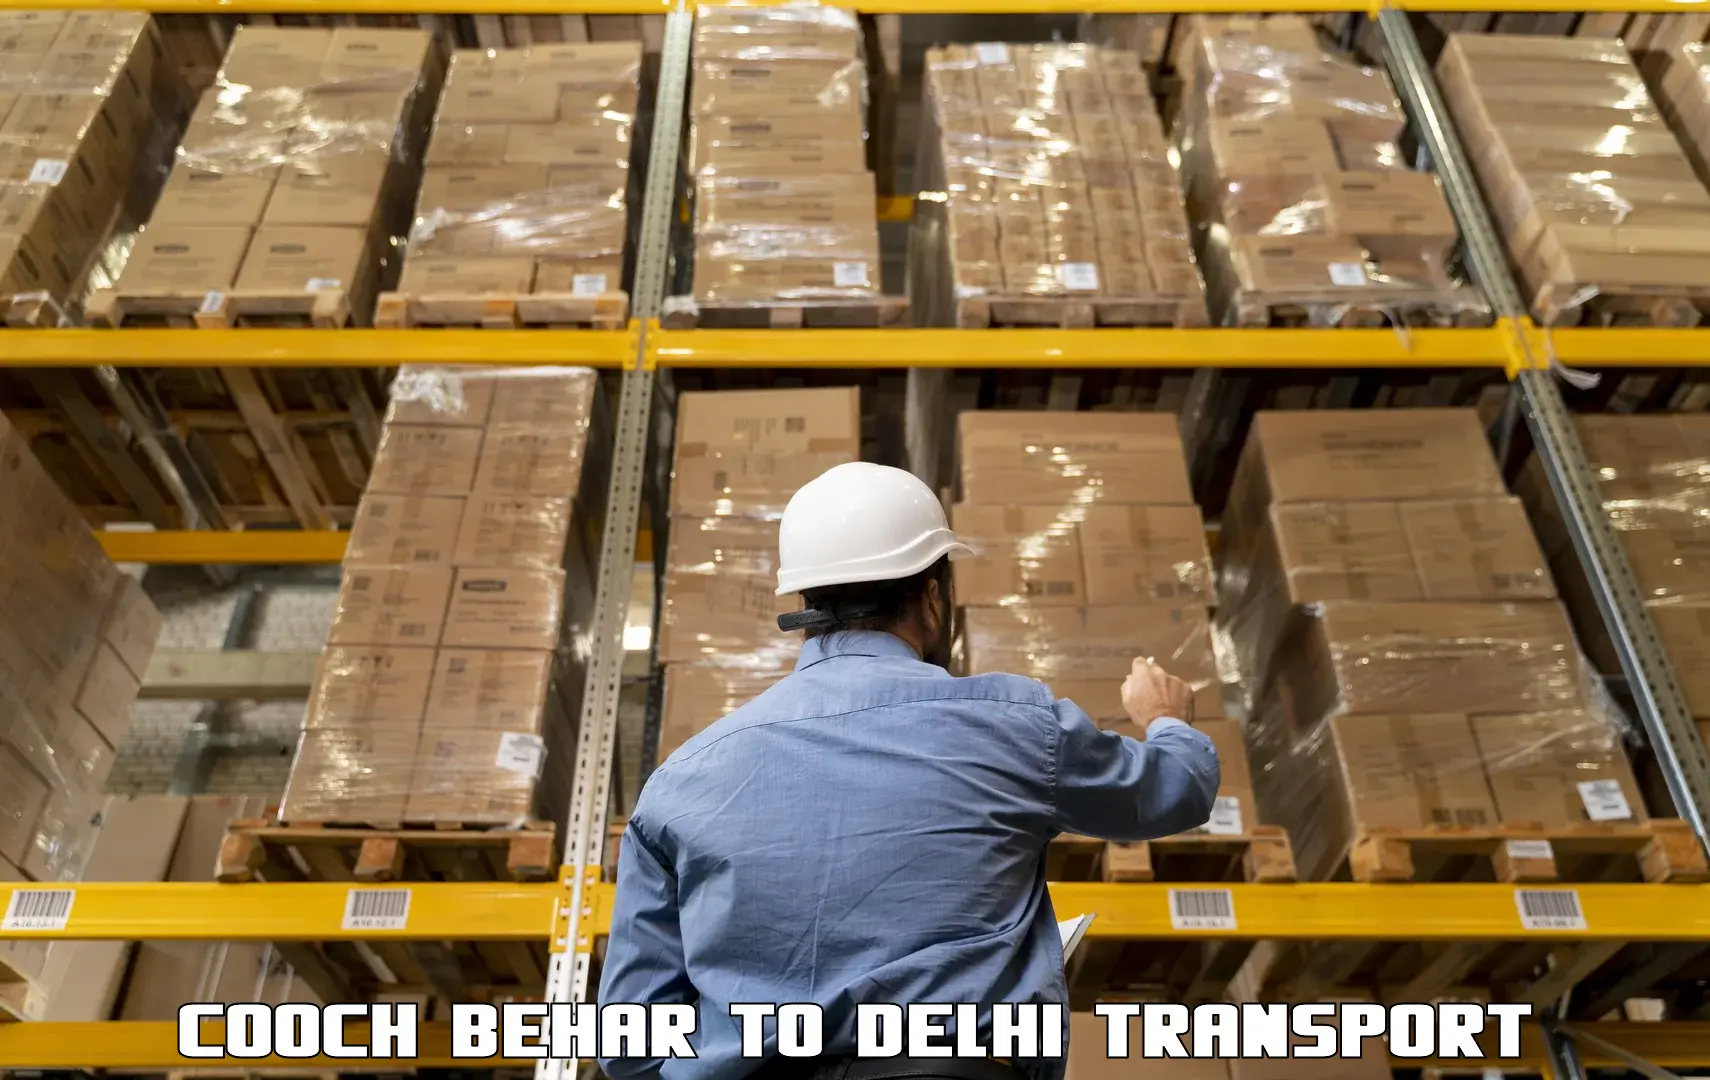 Transportation services Cooch Behar to IIT Delhi